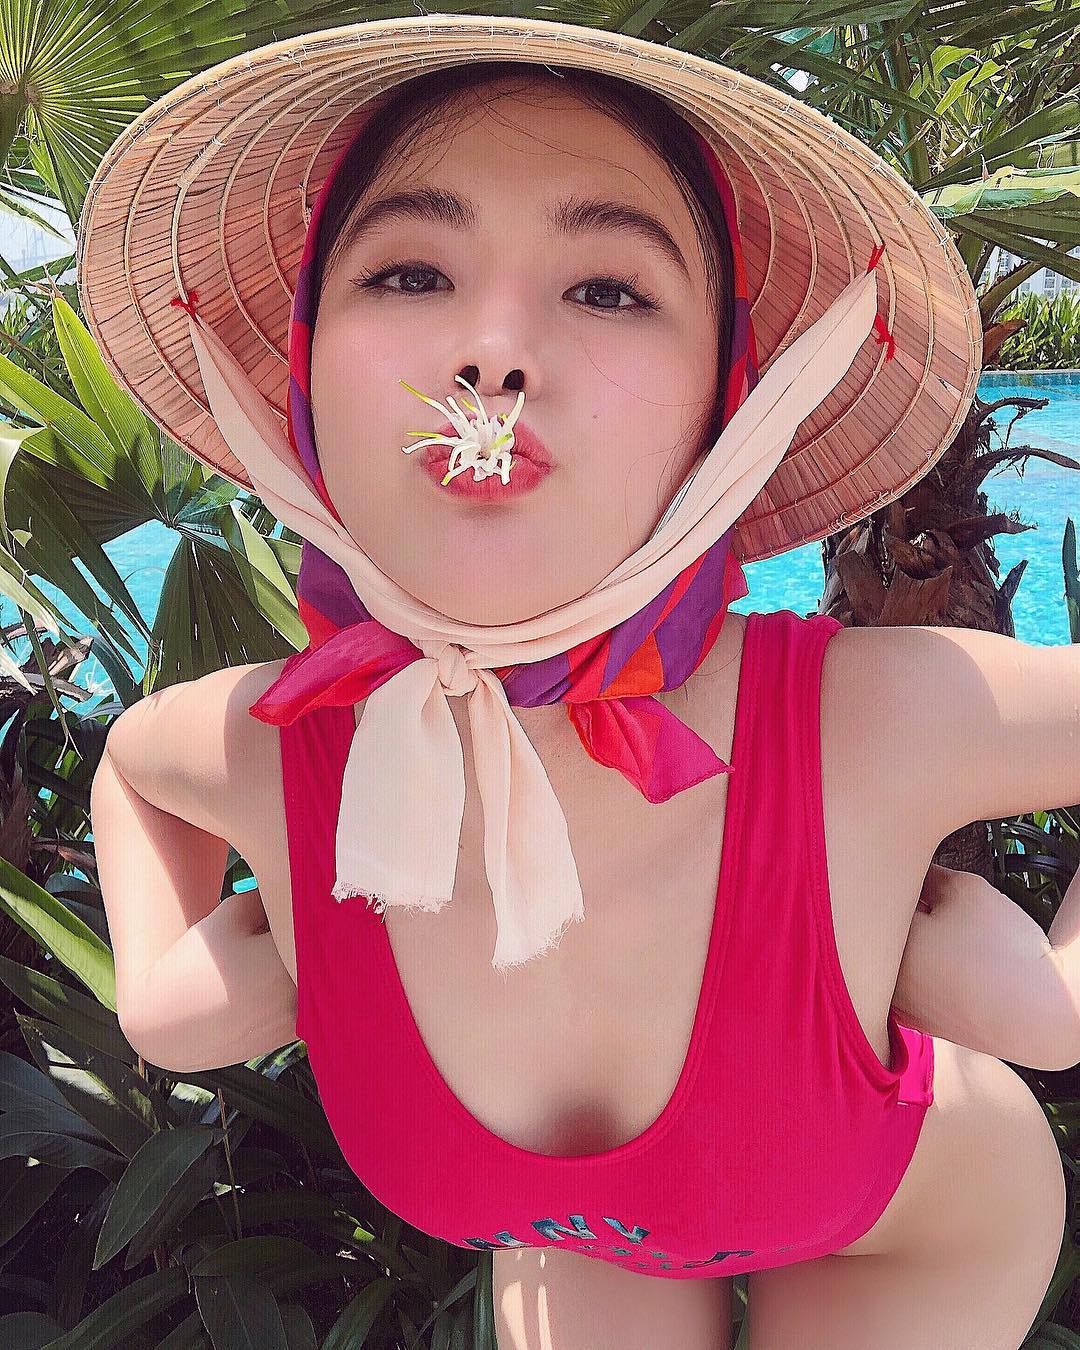 Cùng Angela Phương Trinh bắt kịp xu hướng hè 2018: Đội nón lá đi bơi - Ảnh 1.